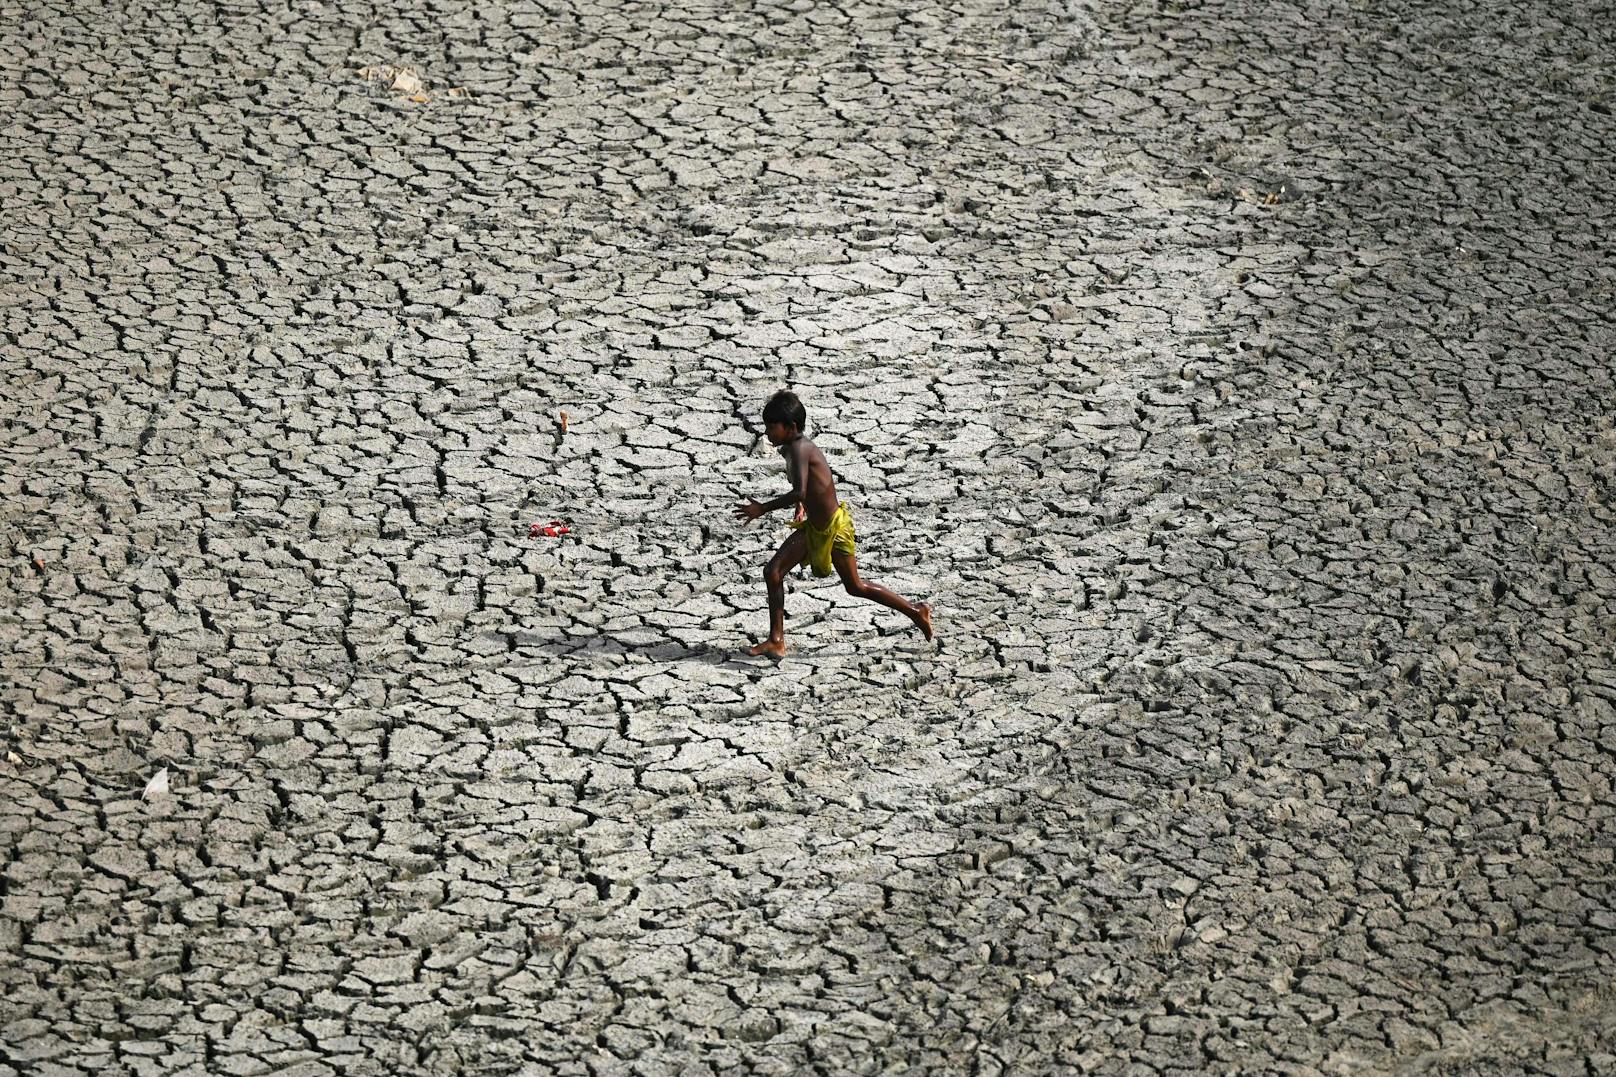 Südasien prekär an vorderster Front der Klimakrise